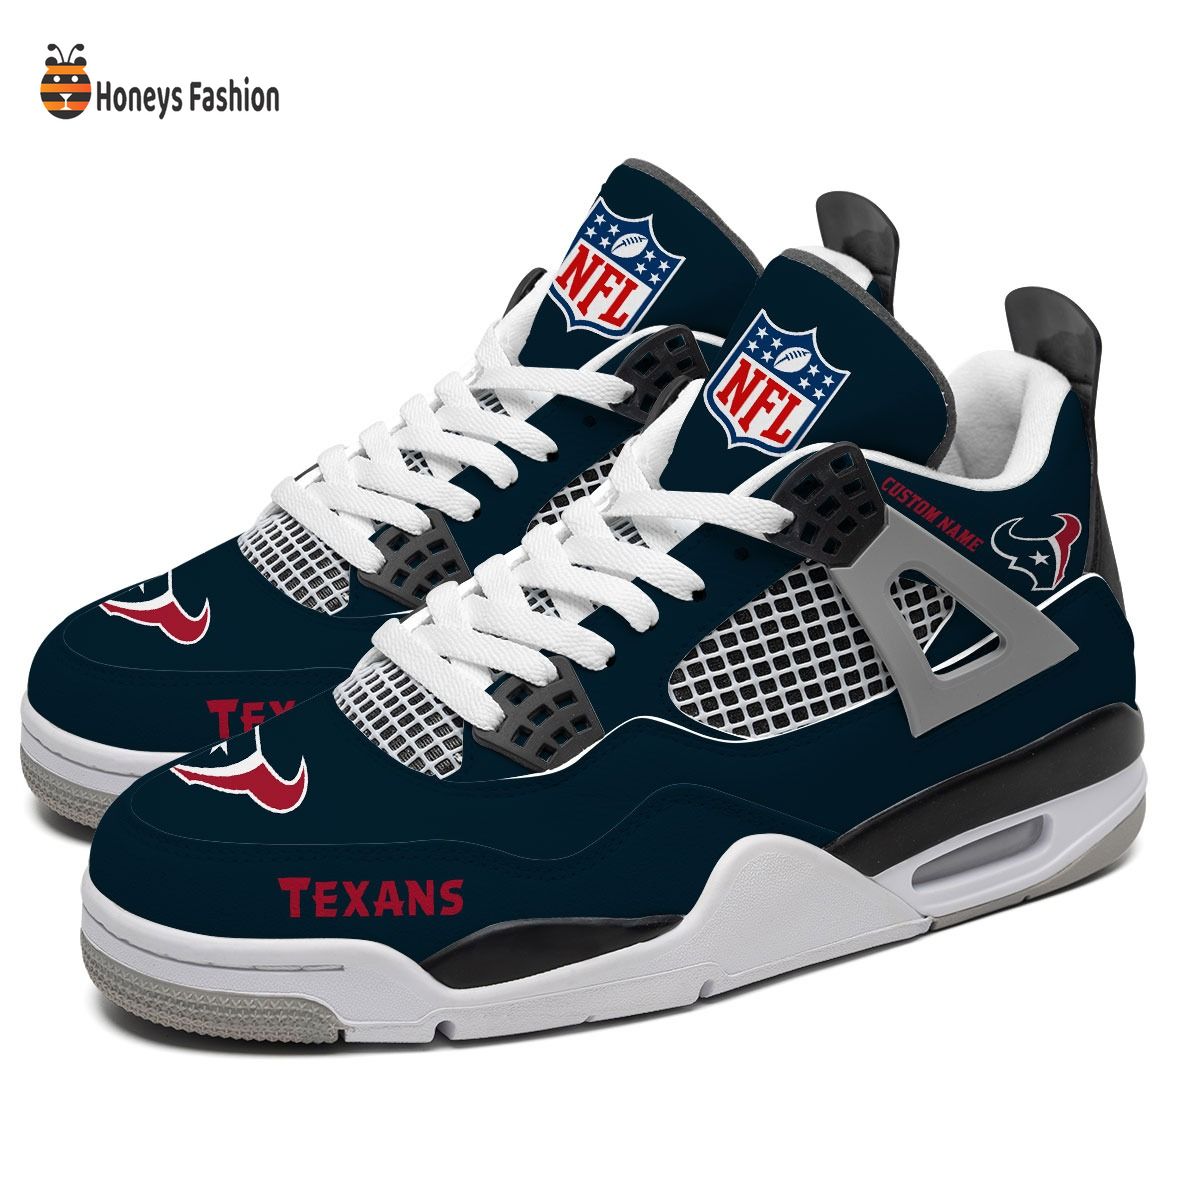 Houston Texans NFL Air Jordan 4 Shoes